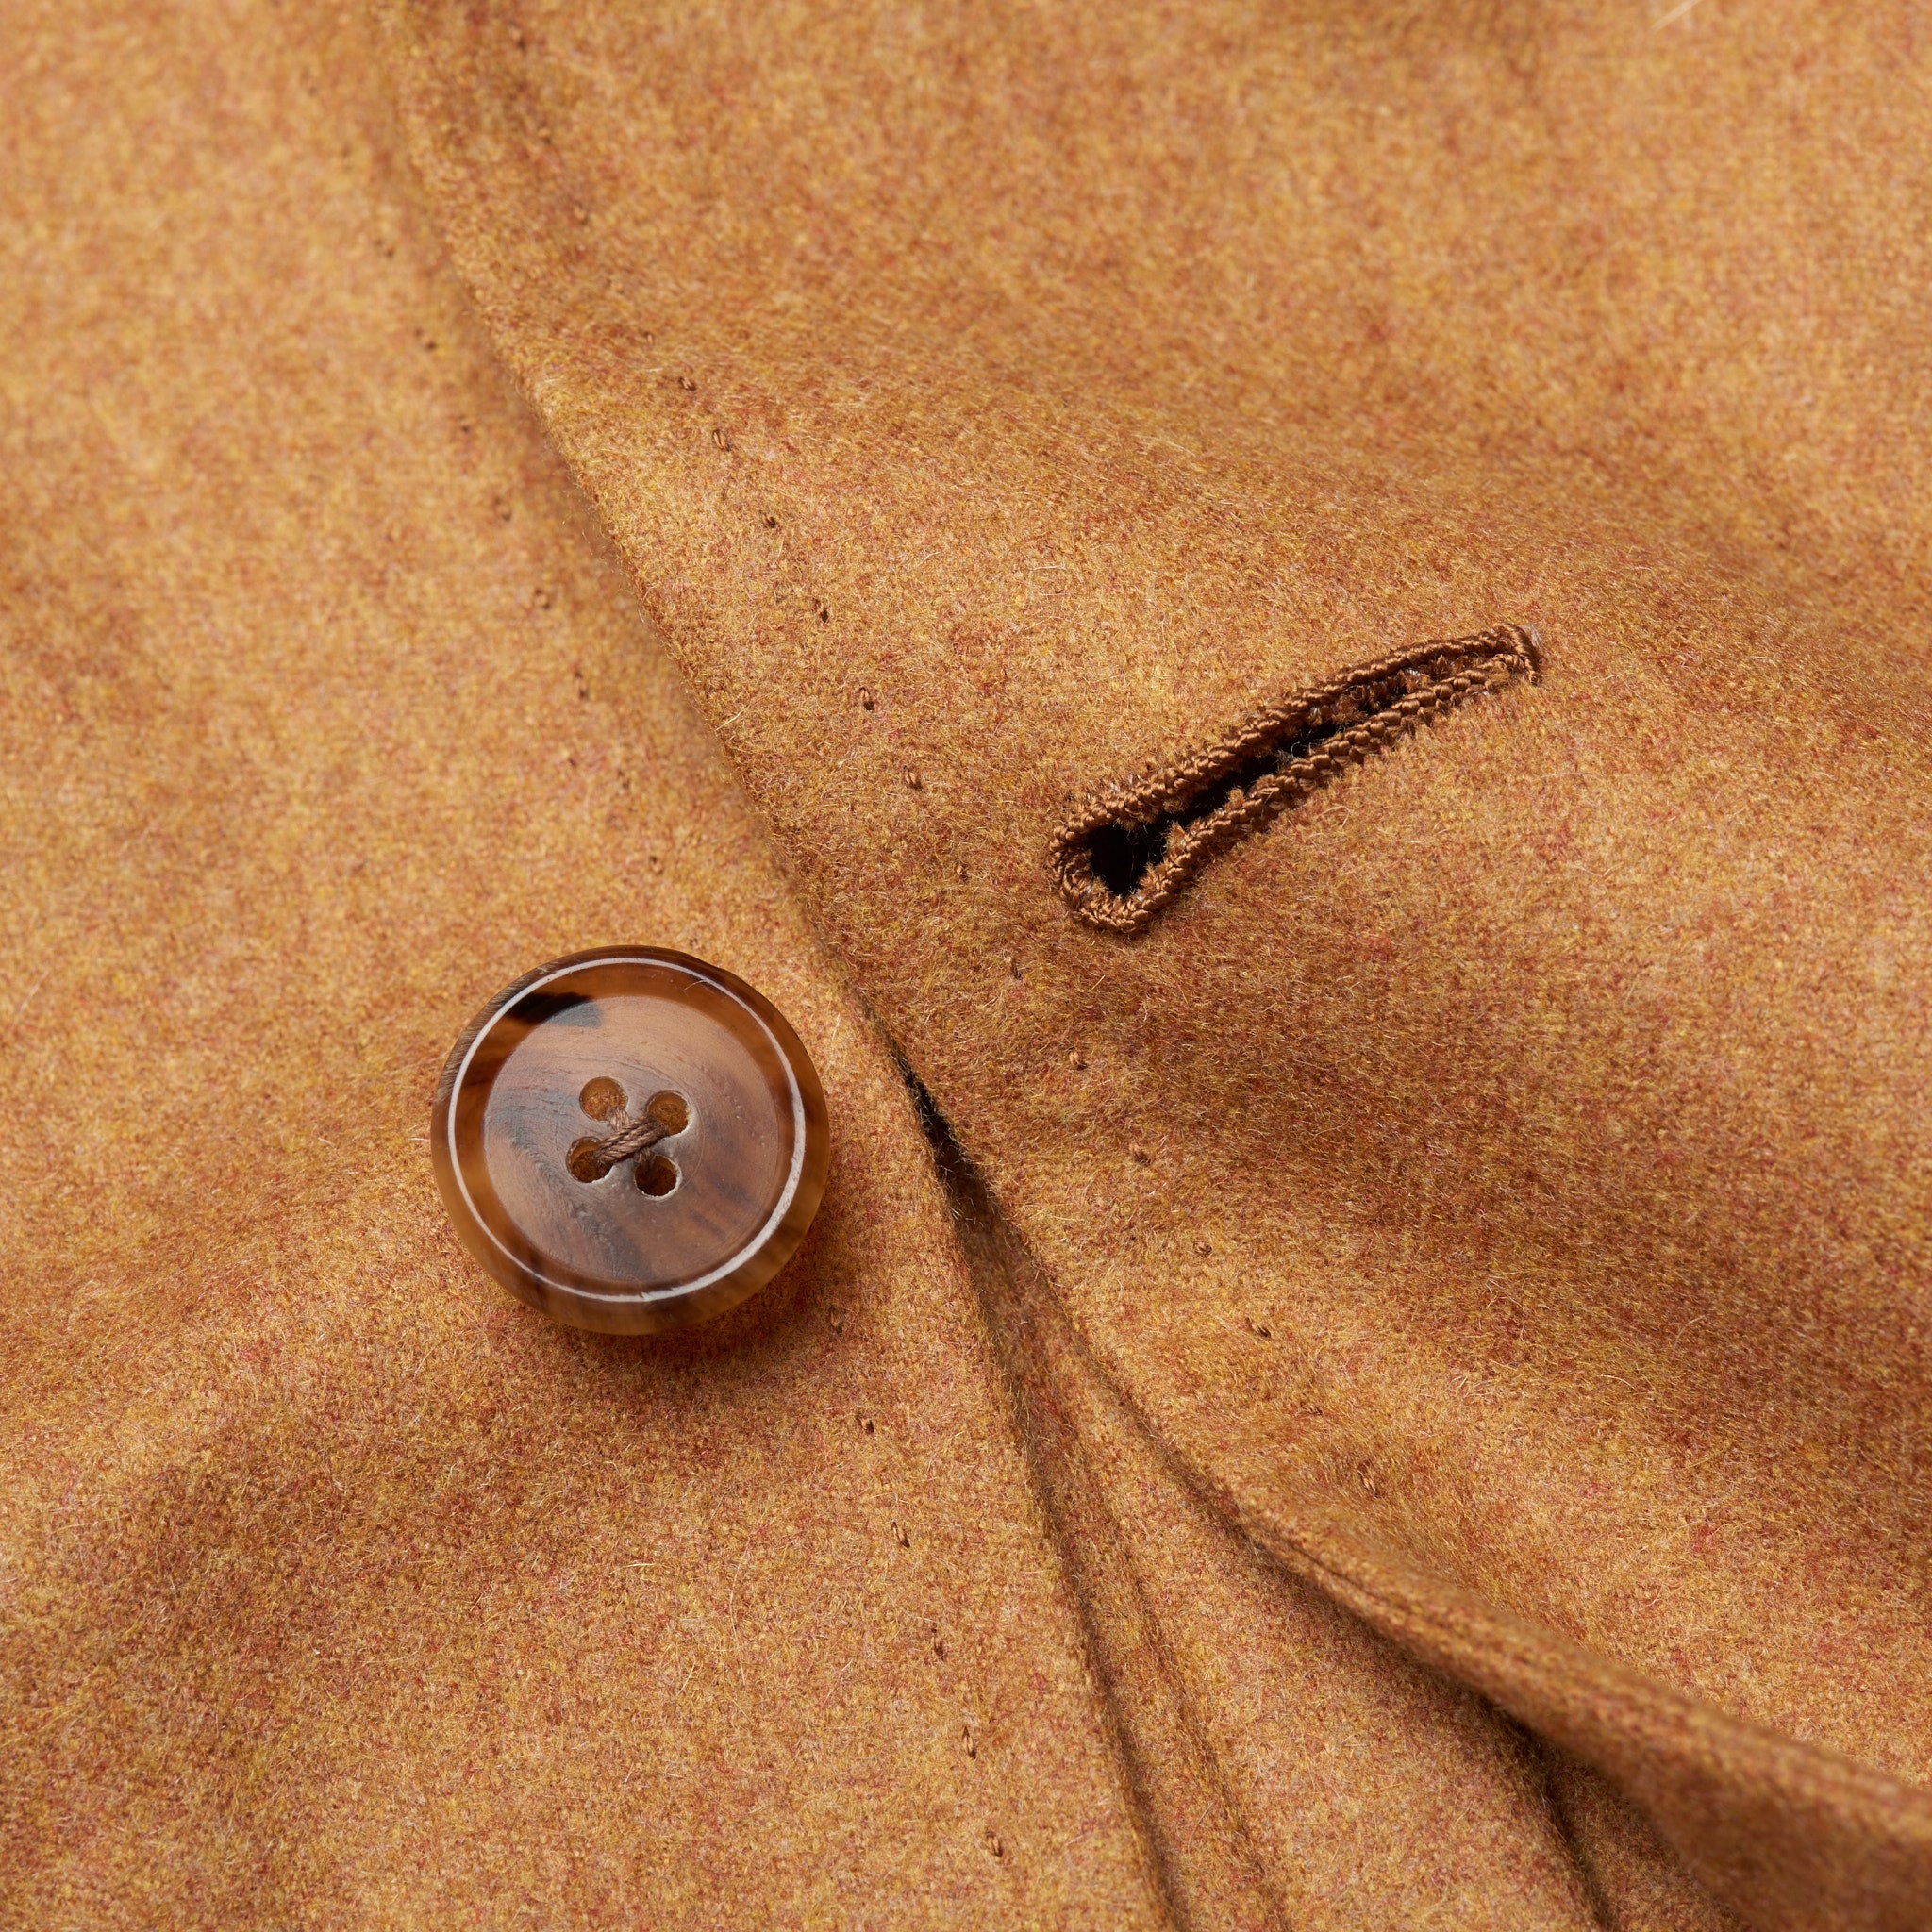 D'AVENZA Handmade Tan Cashmere Unlined Suit EU 50 NEW US 40 D'AVENZA